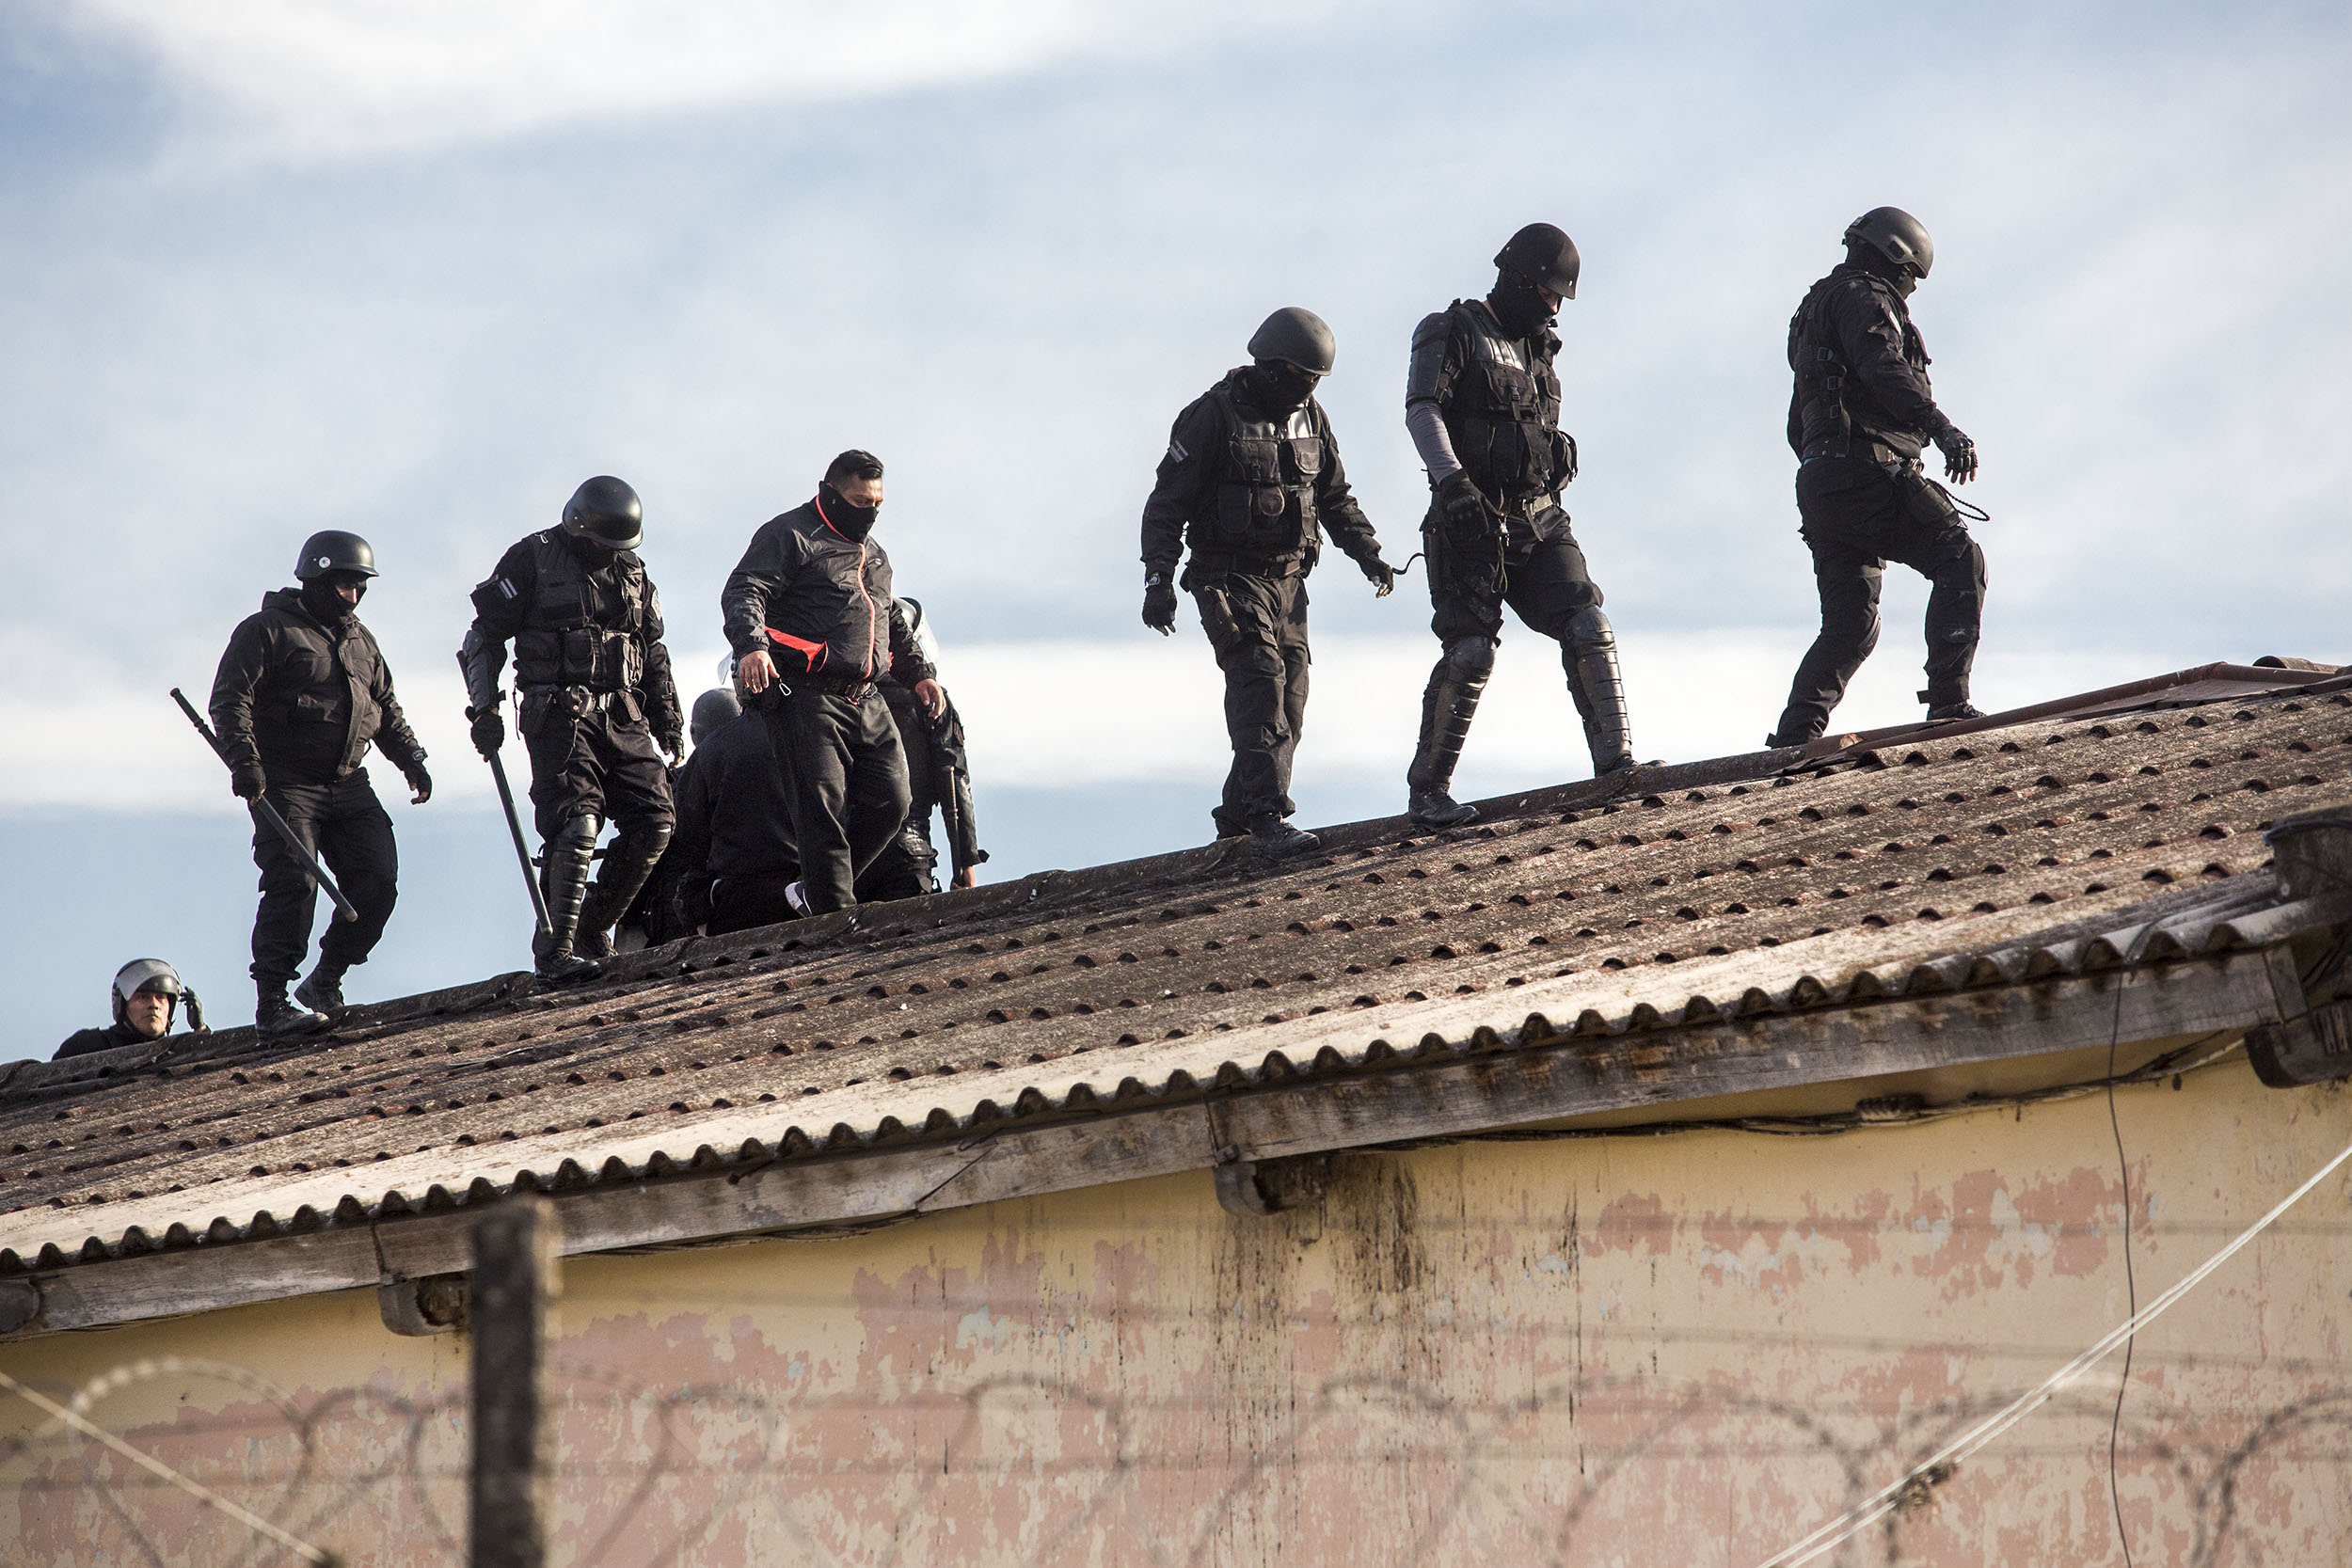 La Policía subió también a los techos para controlar la situación. (Nicolás Guerrero)